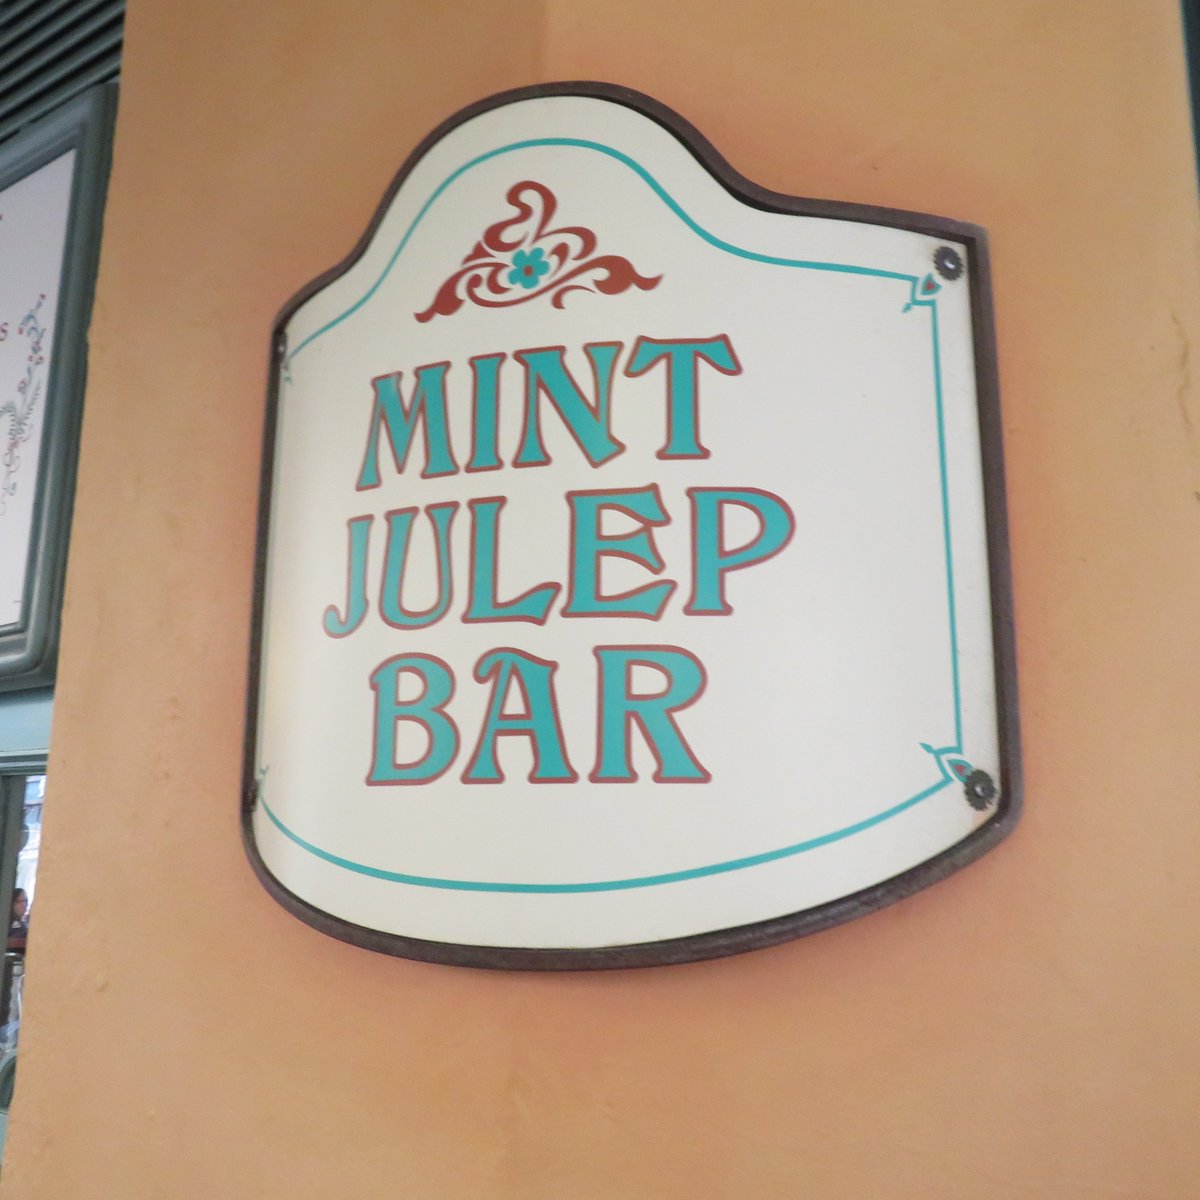 カリフォルニアのディズニーランドで、ミントジュレップを飲みました。ミントの香りが爽やかで本当に美味しかったです。
julep「ジュレップ」は語頭がjuice「果汁」に似ていますが、ラテン語jus「煮出し汁」が語源のjuiceと違い、julepの語源はペルシャ語gulāb「ローズウォーター」です。